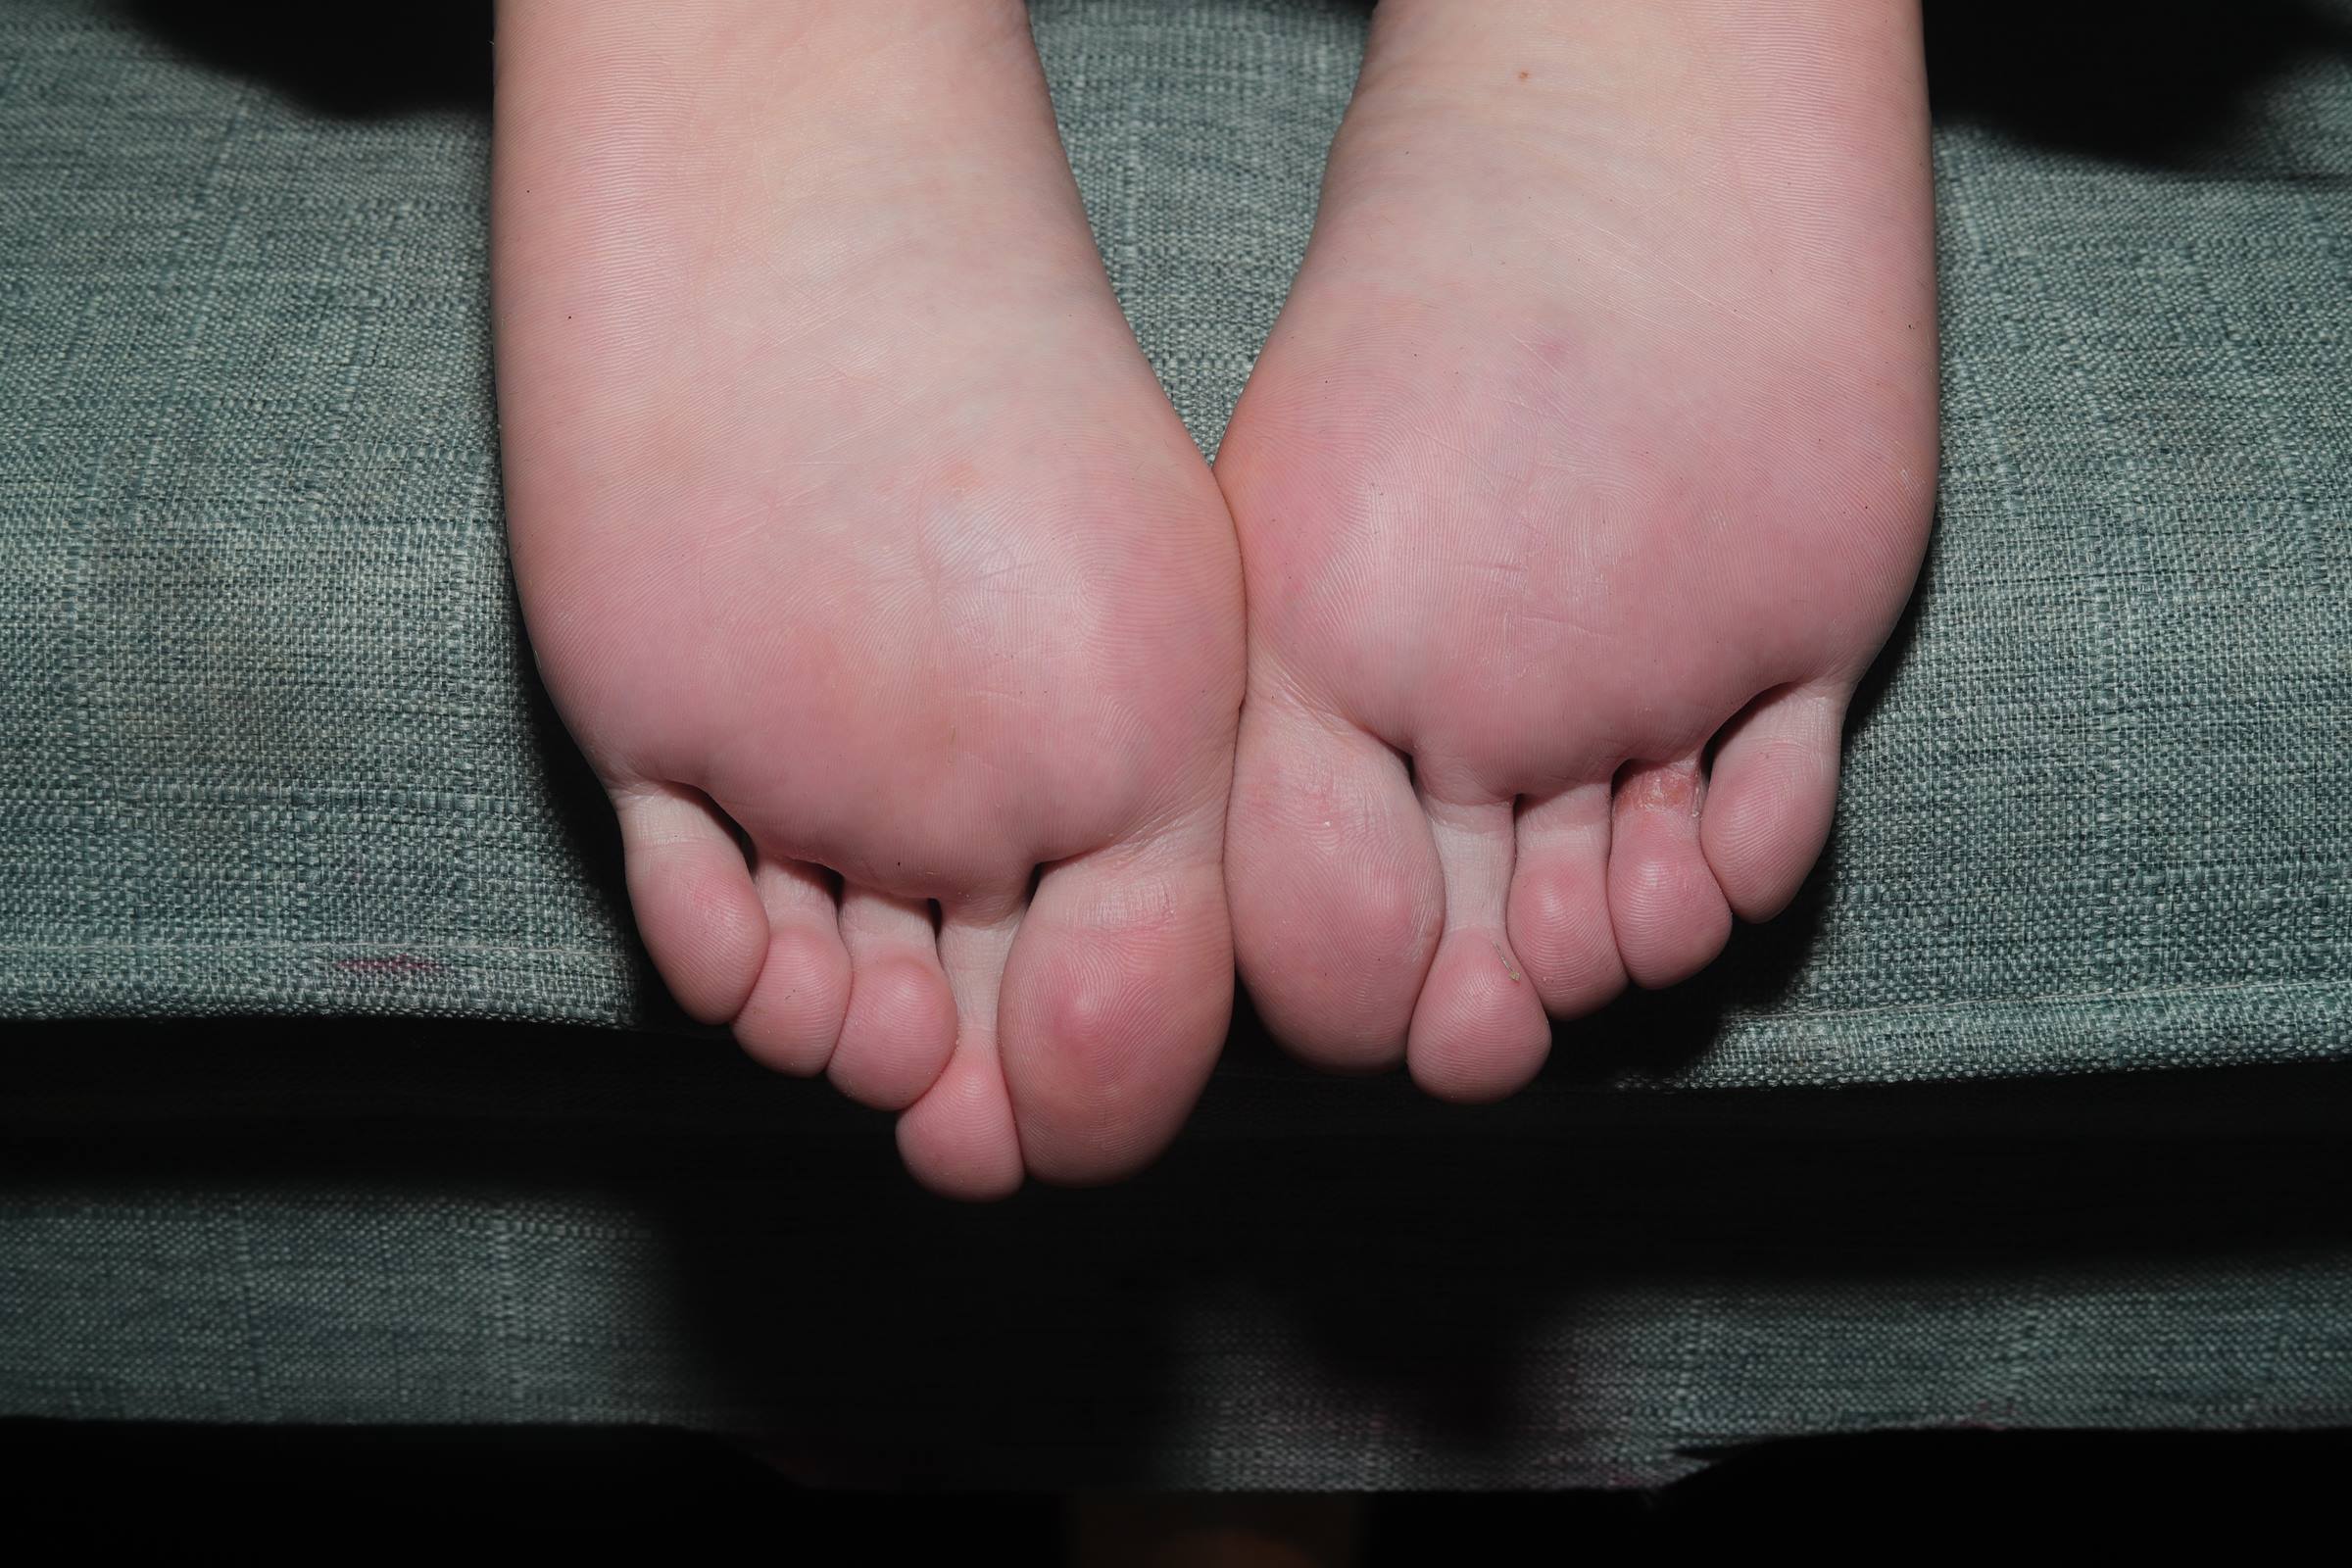 Pary摄影 NO.107 美女桃桃的脚底就像豆腐一样嫩滑[107P]插图